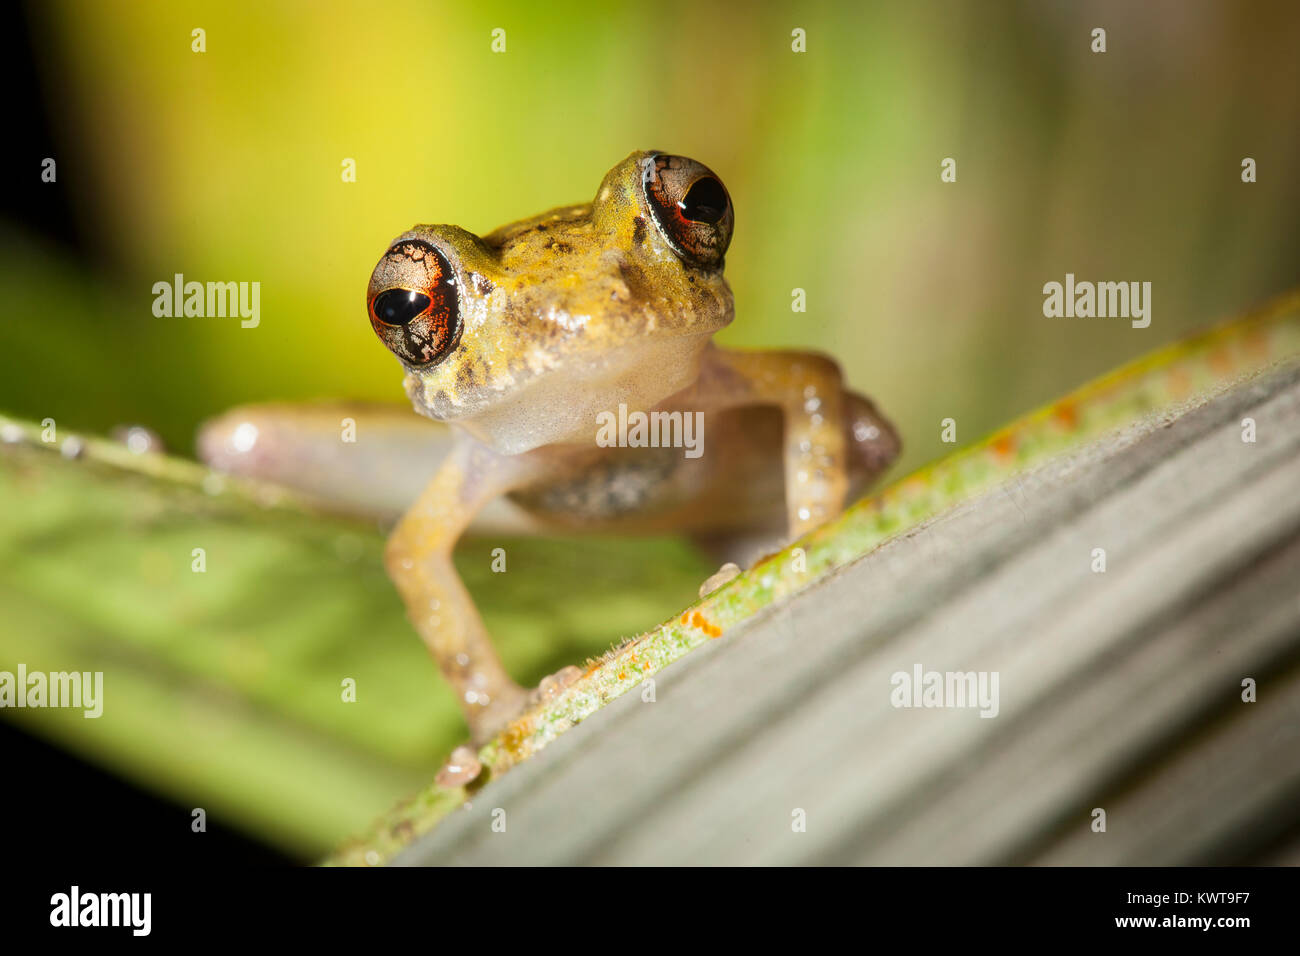 Tropical Hylid frog. Podocarpus National Park, Ecuador. Stock Photo